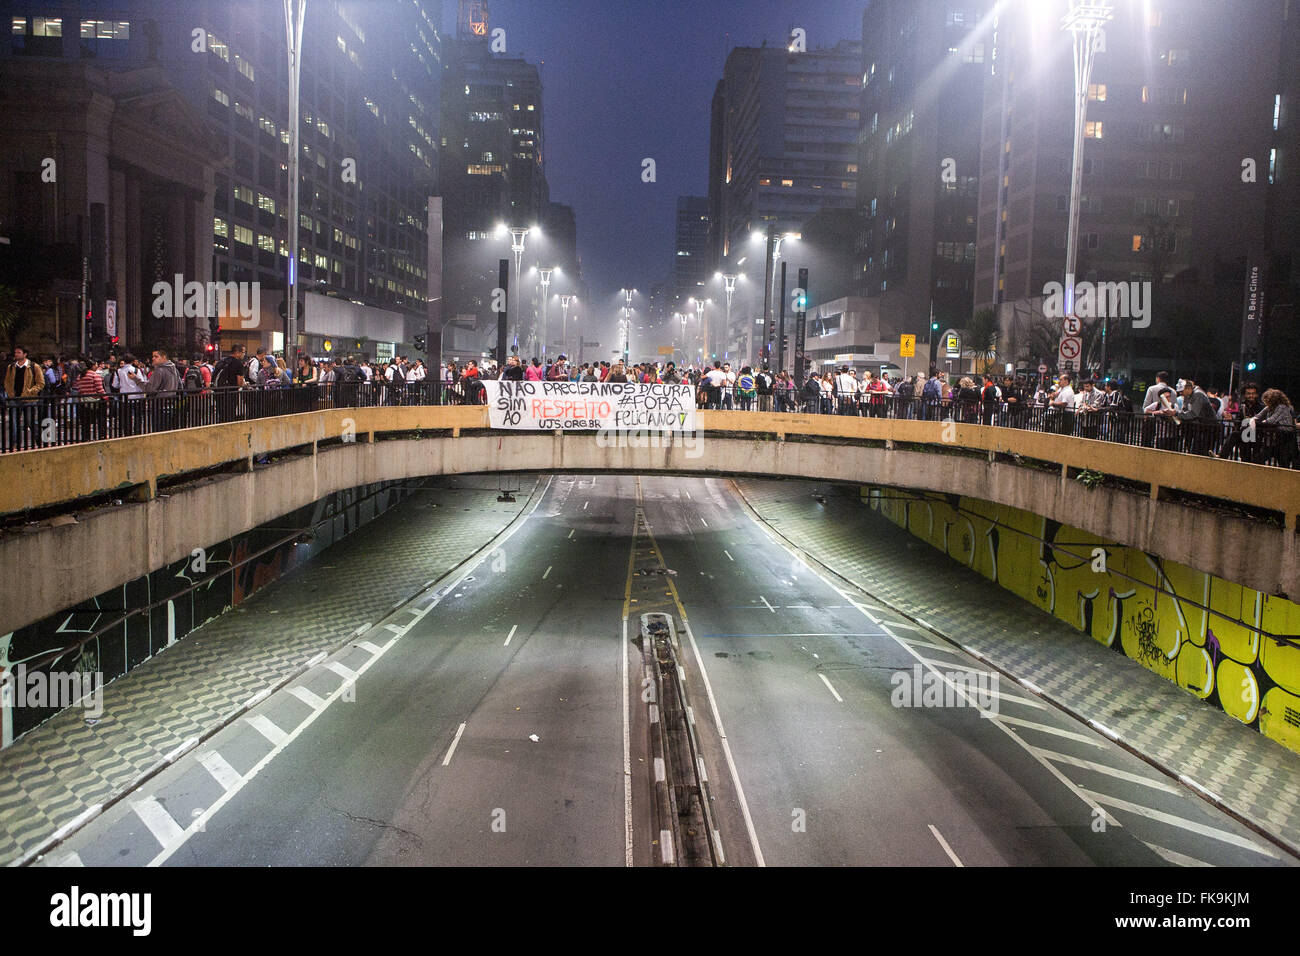 Manifestación de pase libre movimiento contra el aumento en el precio del autobús Foto de stock